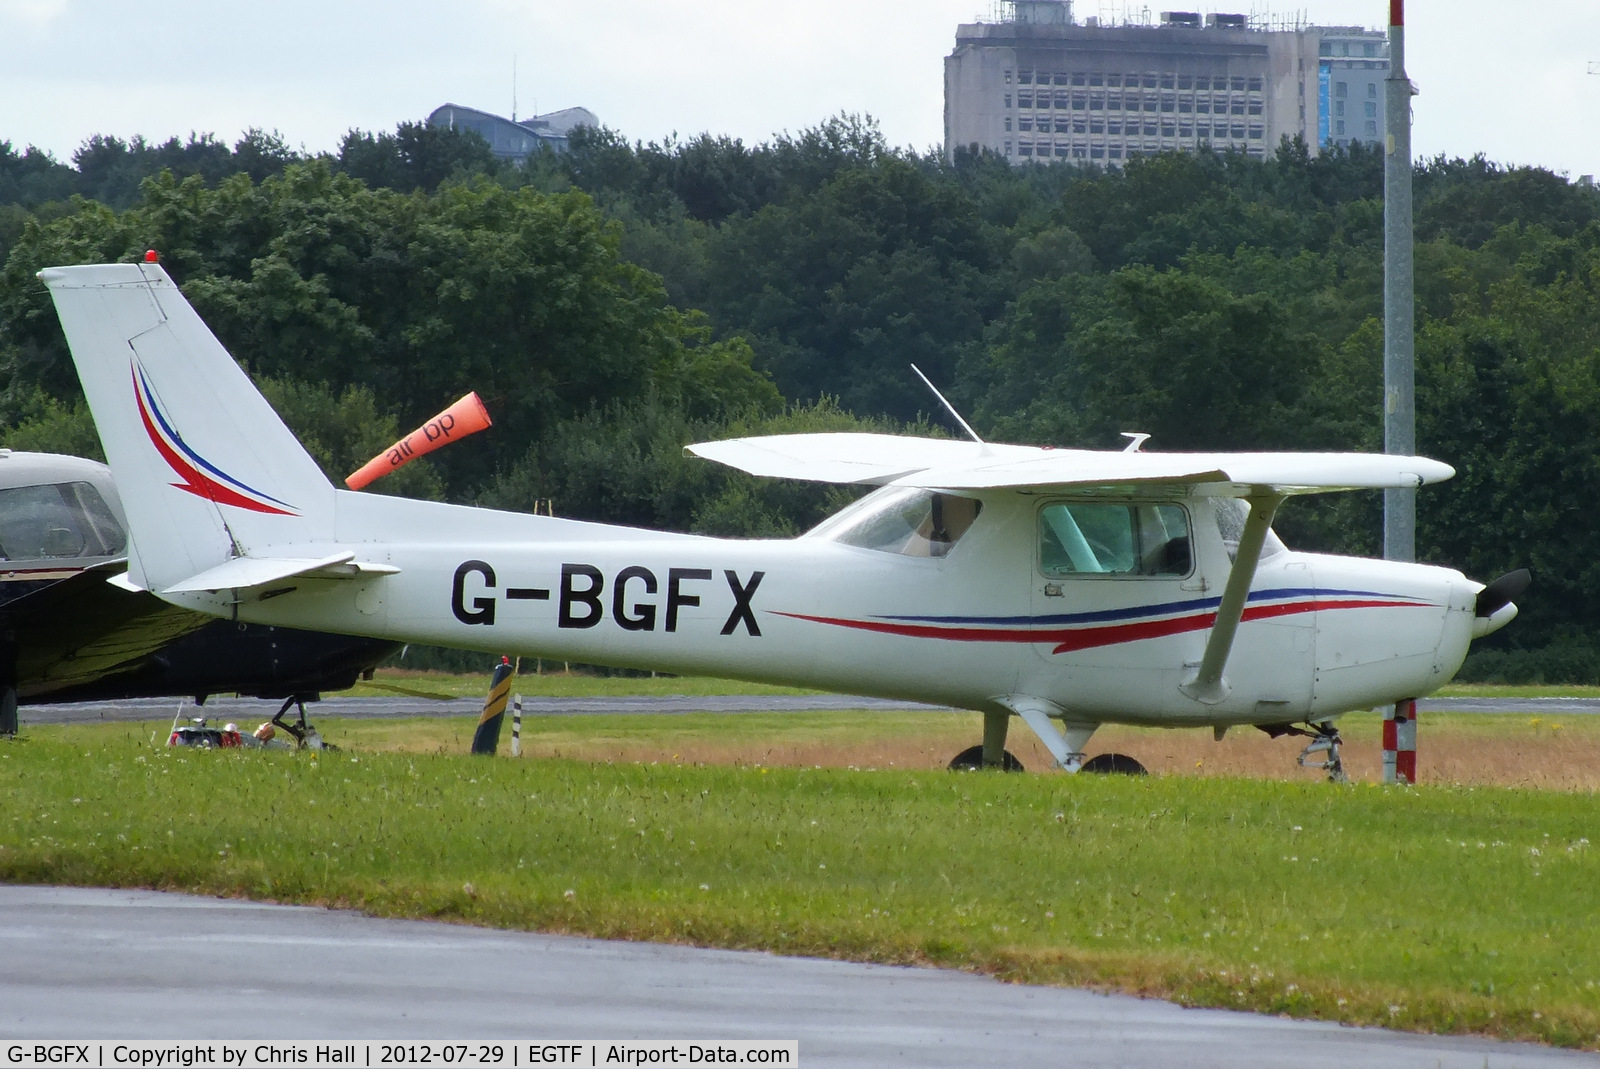 G-BGFX, 1978 Reims F152 C/N 1555, Redhill Air Services Ltd